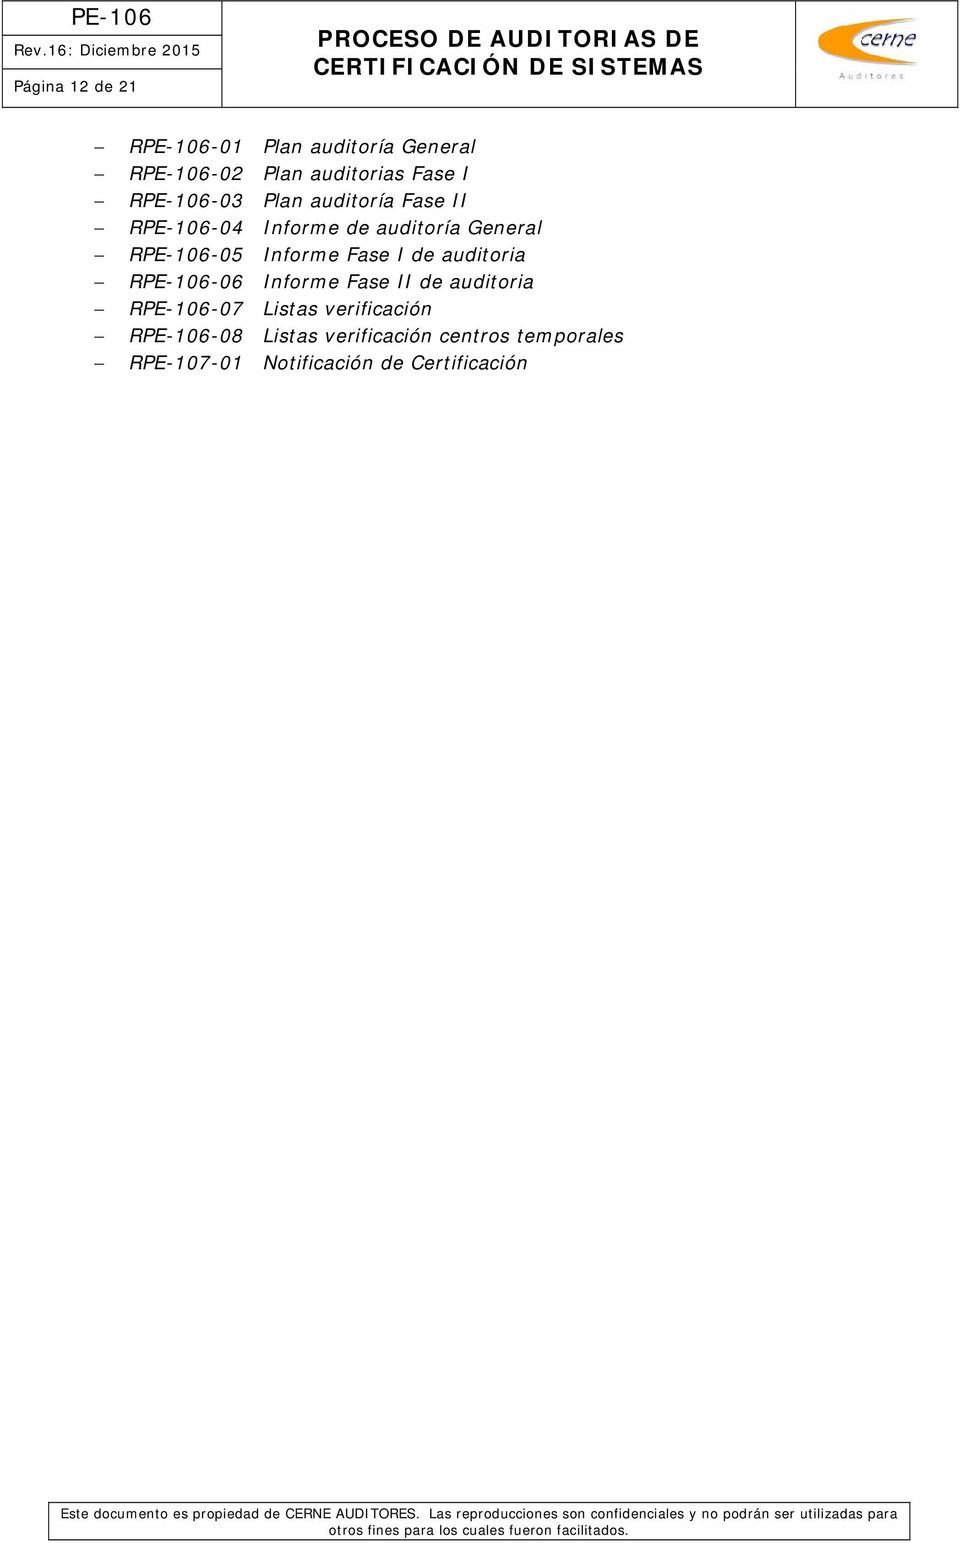 Informe Fase I de auditoria RPE-106-06 Informe Fase II de auditoria RPE-106-07 Listas